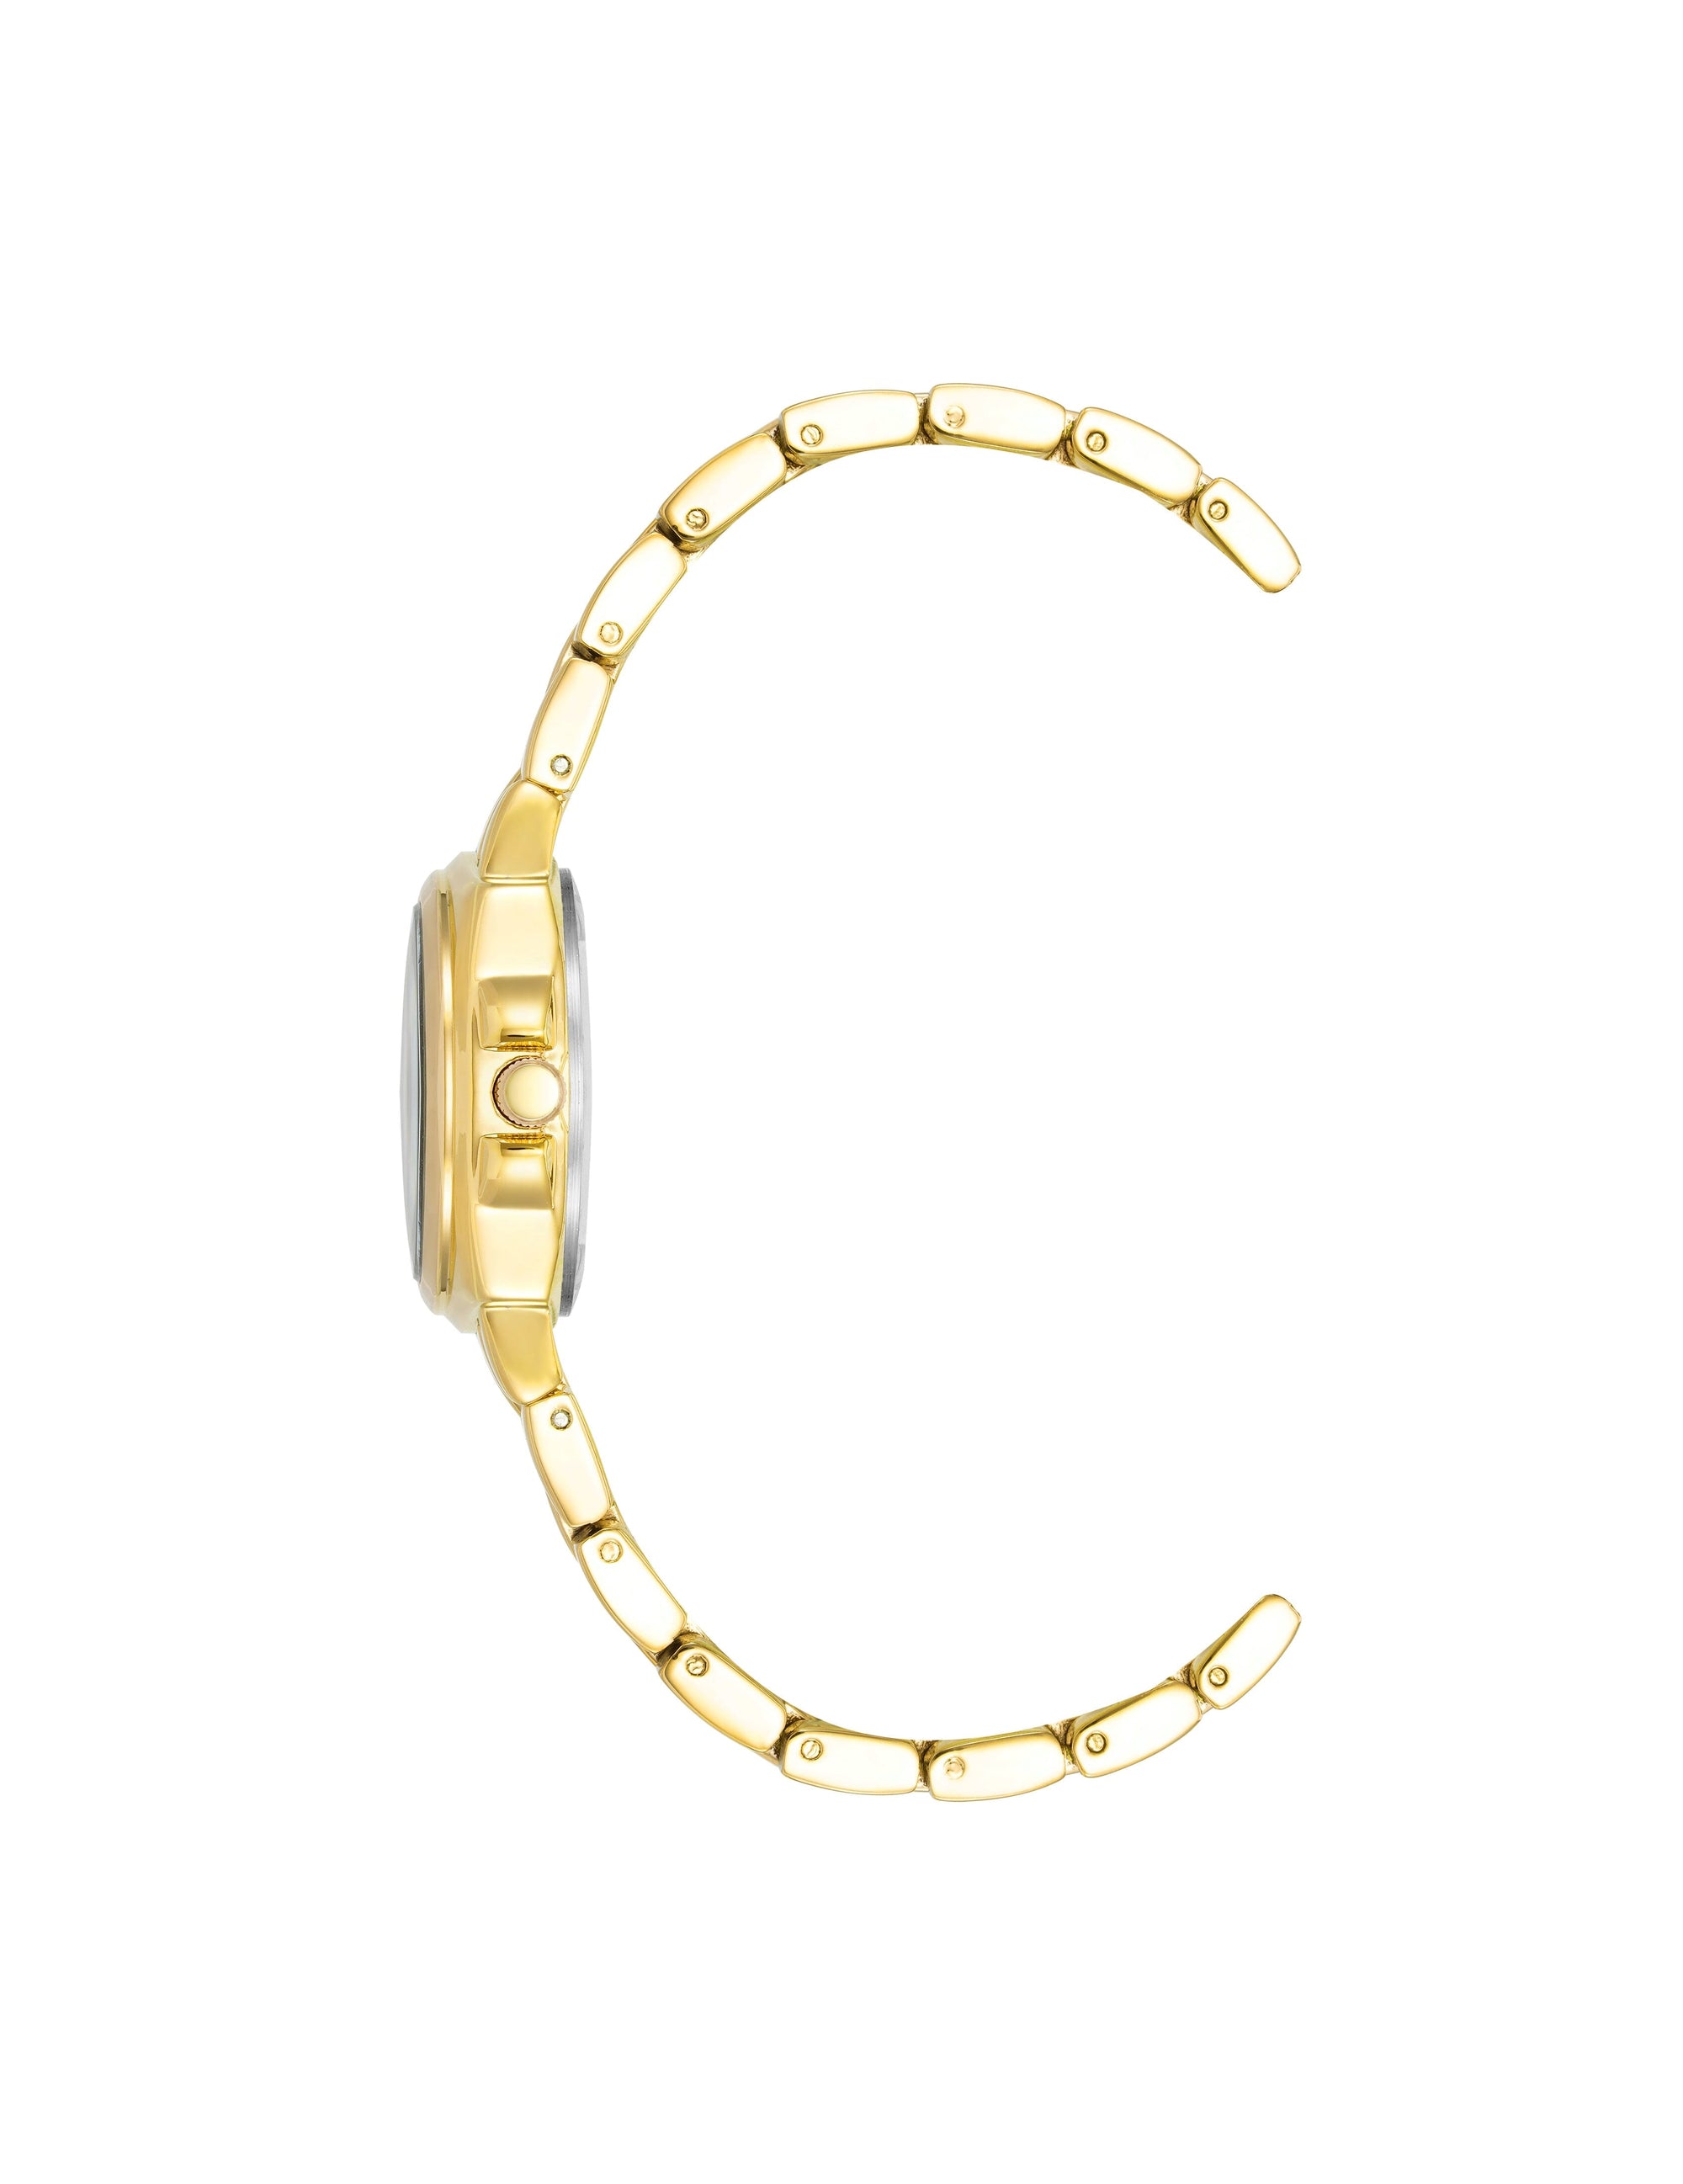 Anne Klein Gold-Tone Cushion Case Bracelet Watch